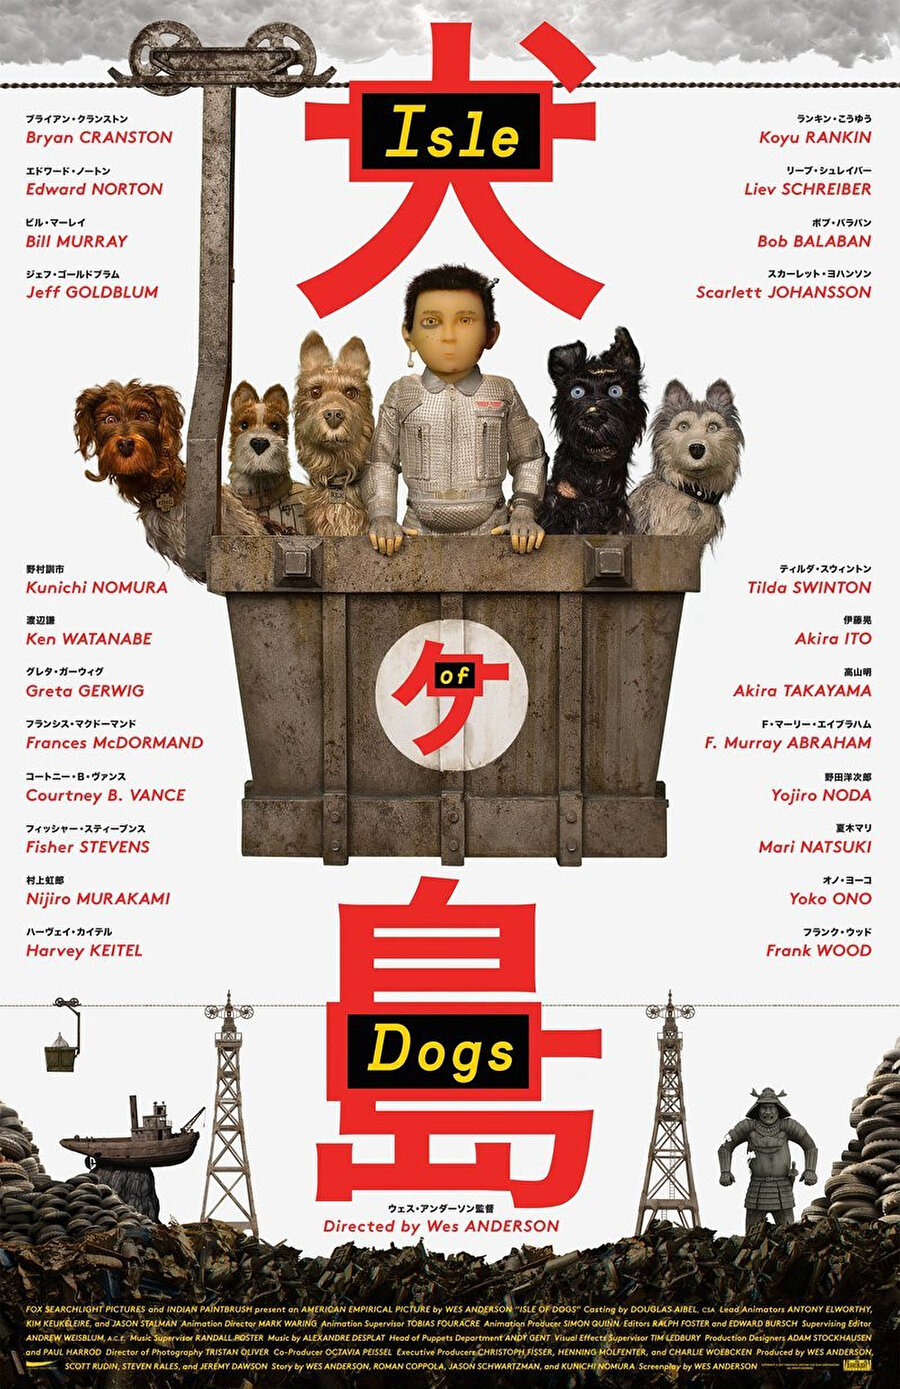  Japonya’da geçen animasyon, şehrin tüm köpekleri adaya sürülünce, bu adaya gidip köpeğini arayan Atari adında bir çocuğun hikâyesini anlatıyor. Wes Anderson’a Berlin Film Festivali’nde En İyi Yönetmen ödülünü kazandıran Köpek Adası, 20 Nisan’da vizyonda olacak.